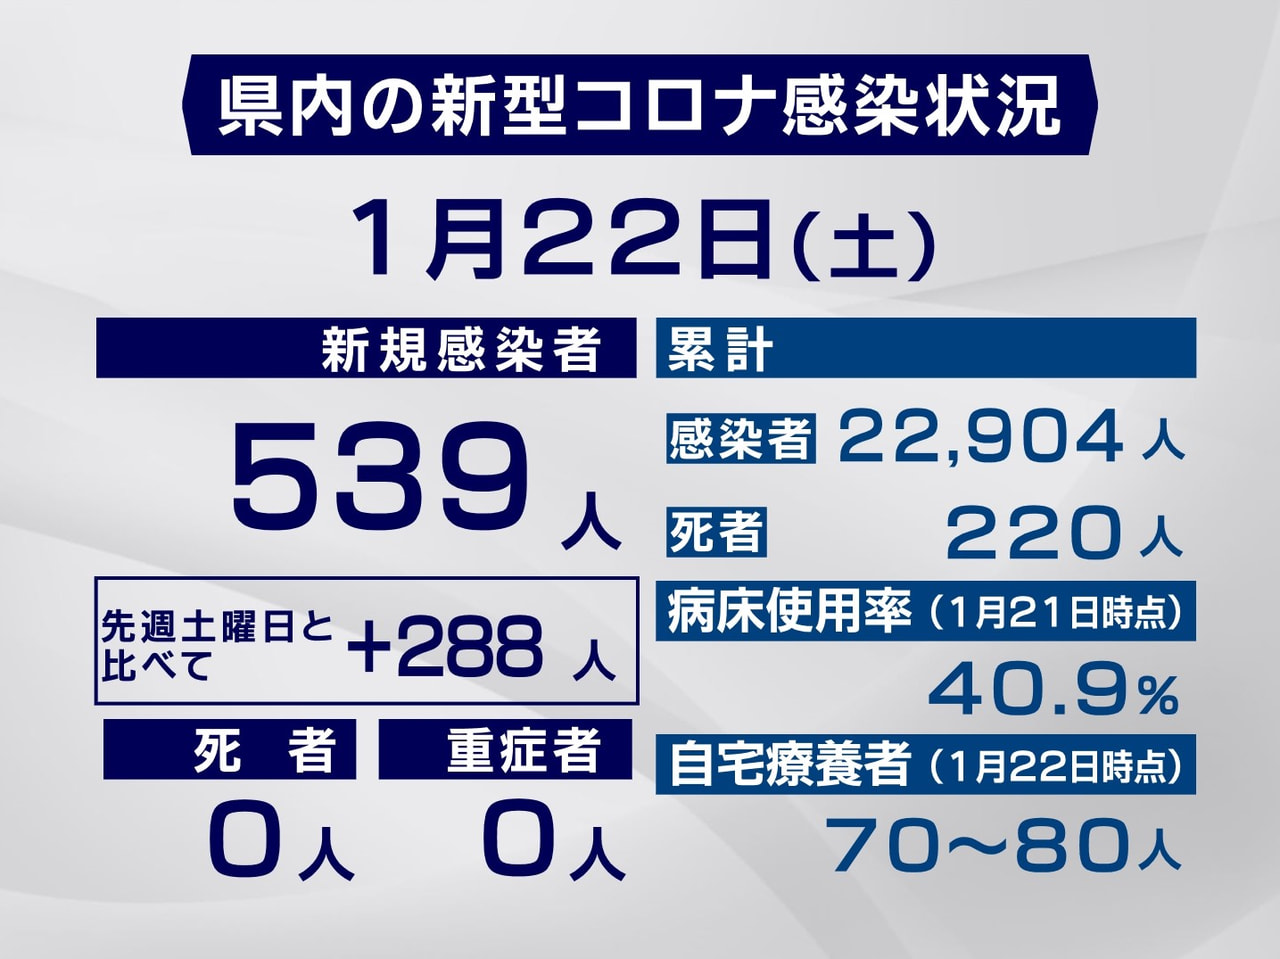 岐阜県と岐阜市は２２日、新たに５３９人の新型コロナウイルス感染を確認したと発表し...